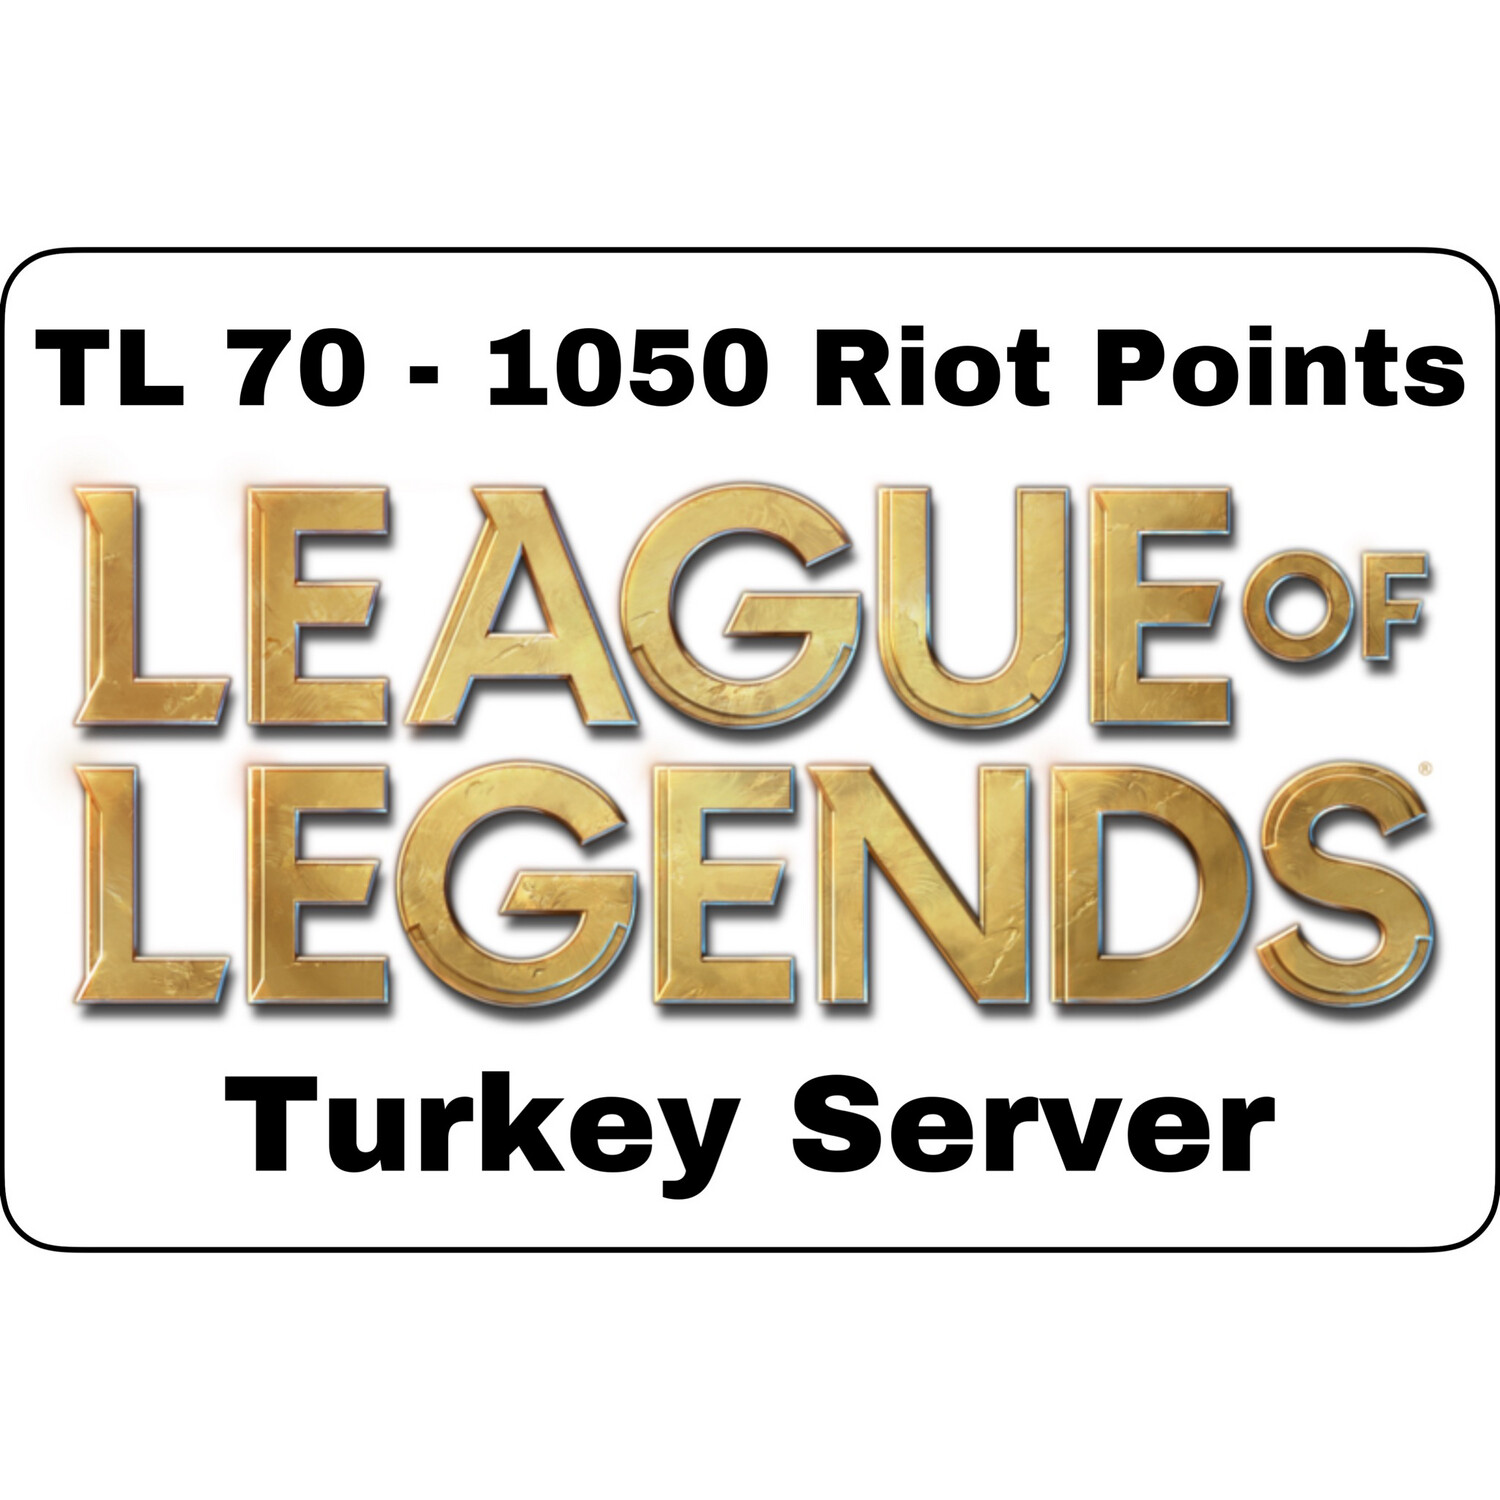 League of Legends TL 70 Turkey Server 1050 Riot Points